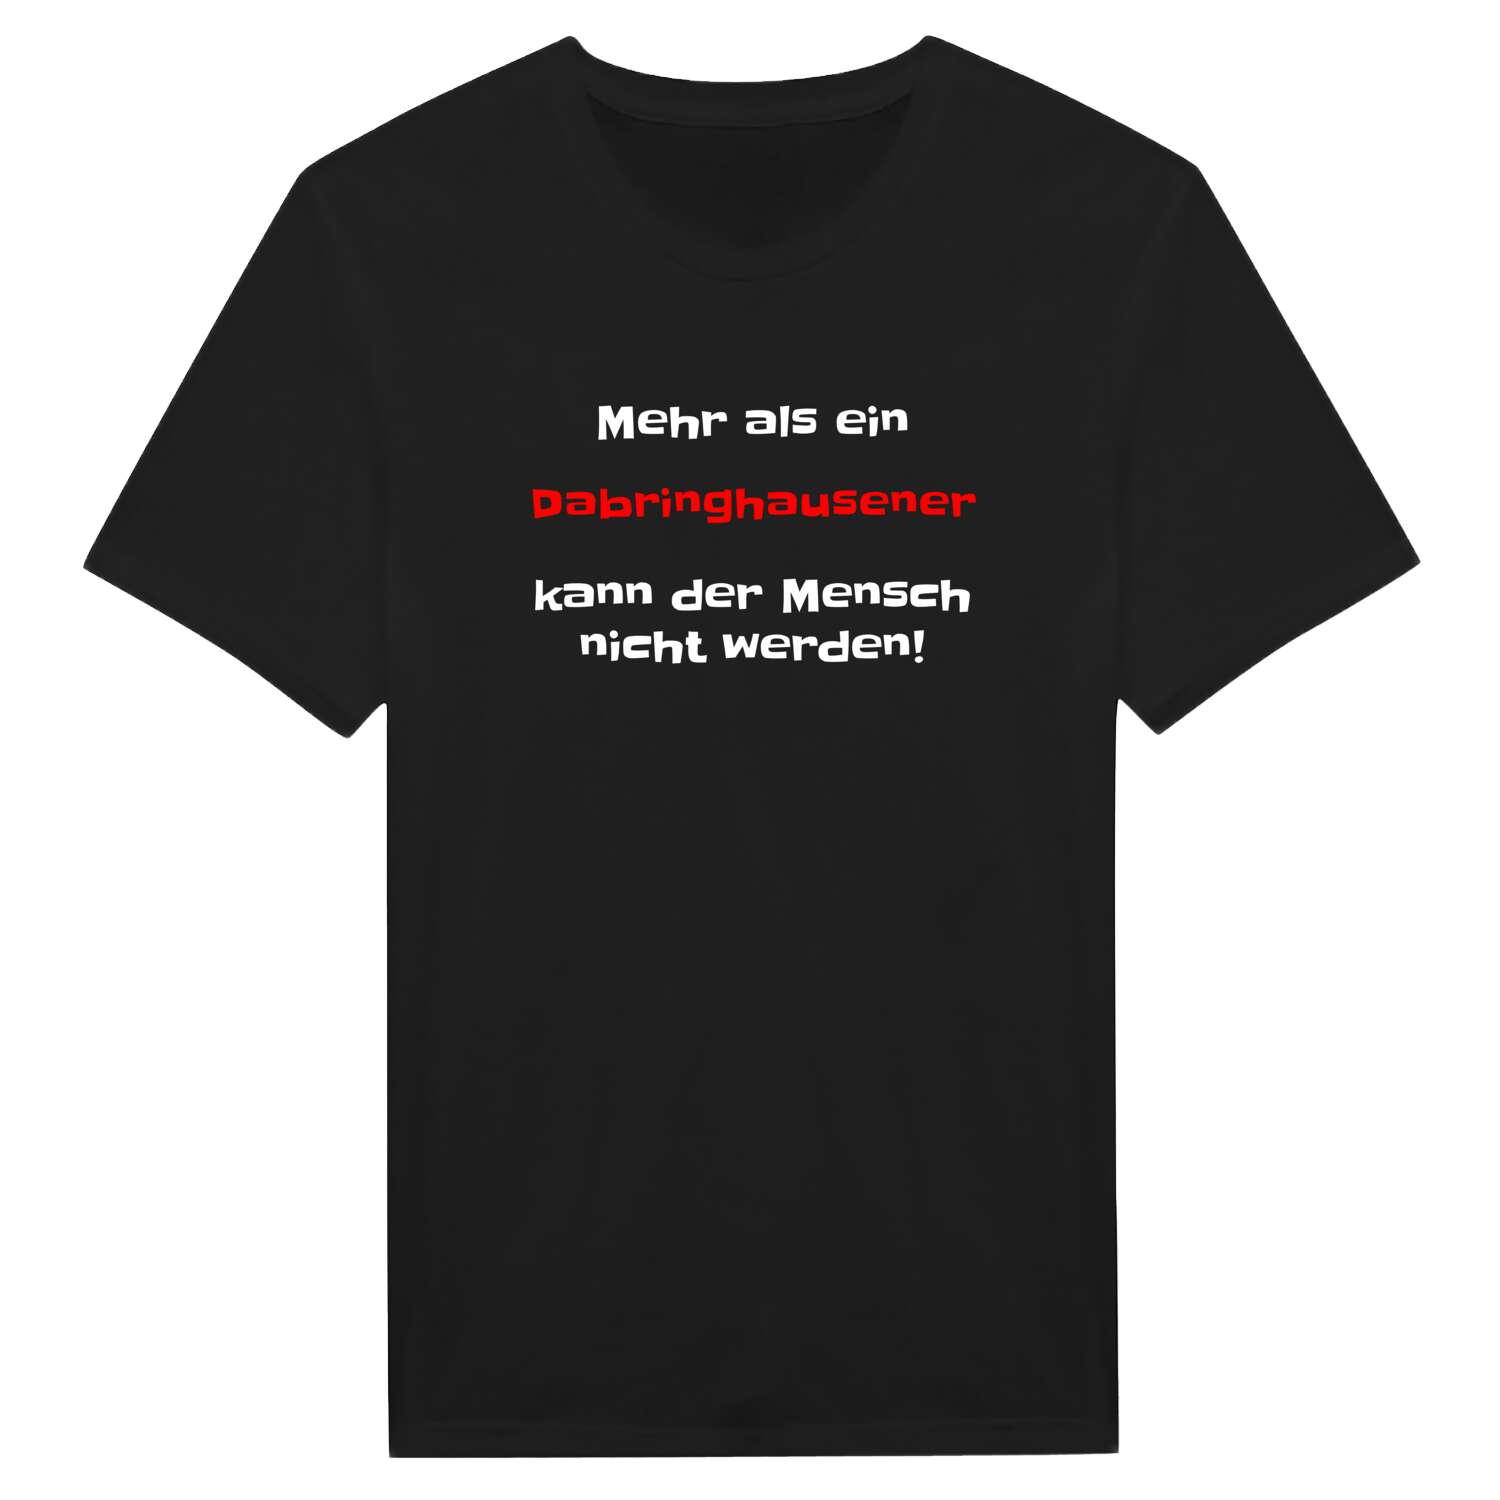 Dabringhausen T-Shirt »Mehr als ein«